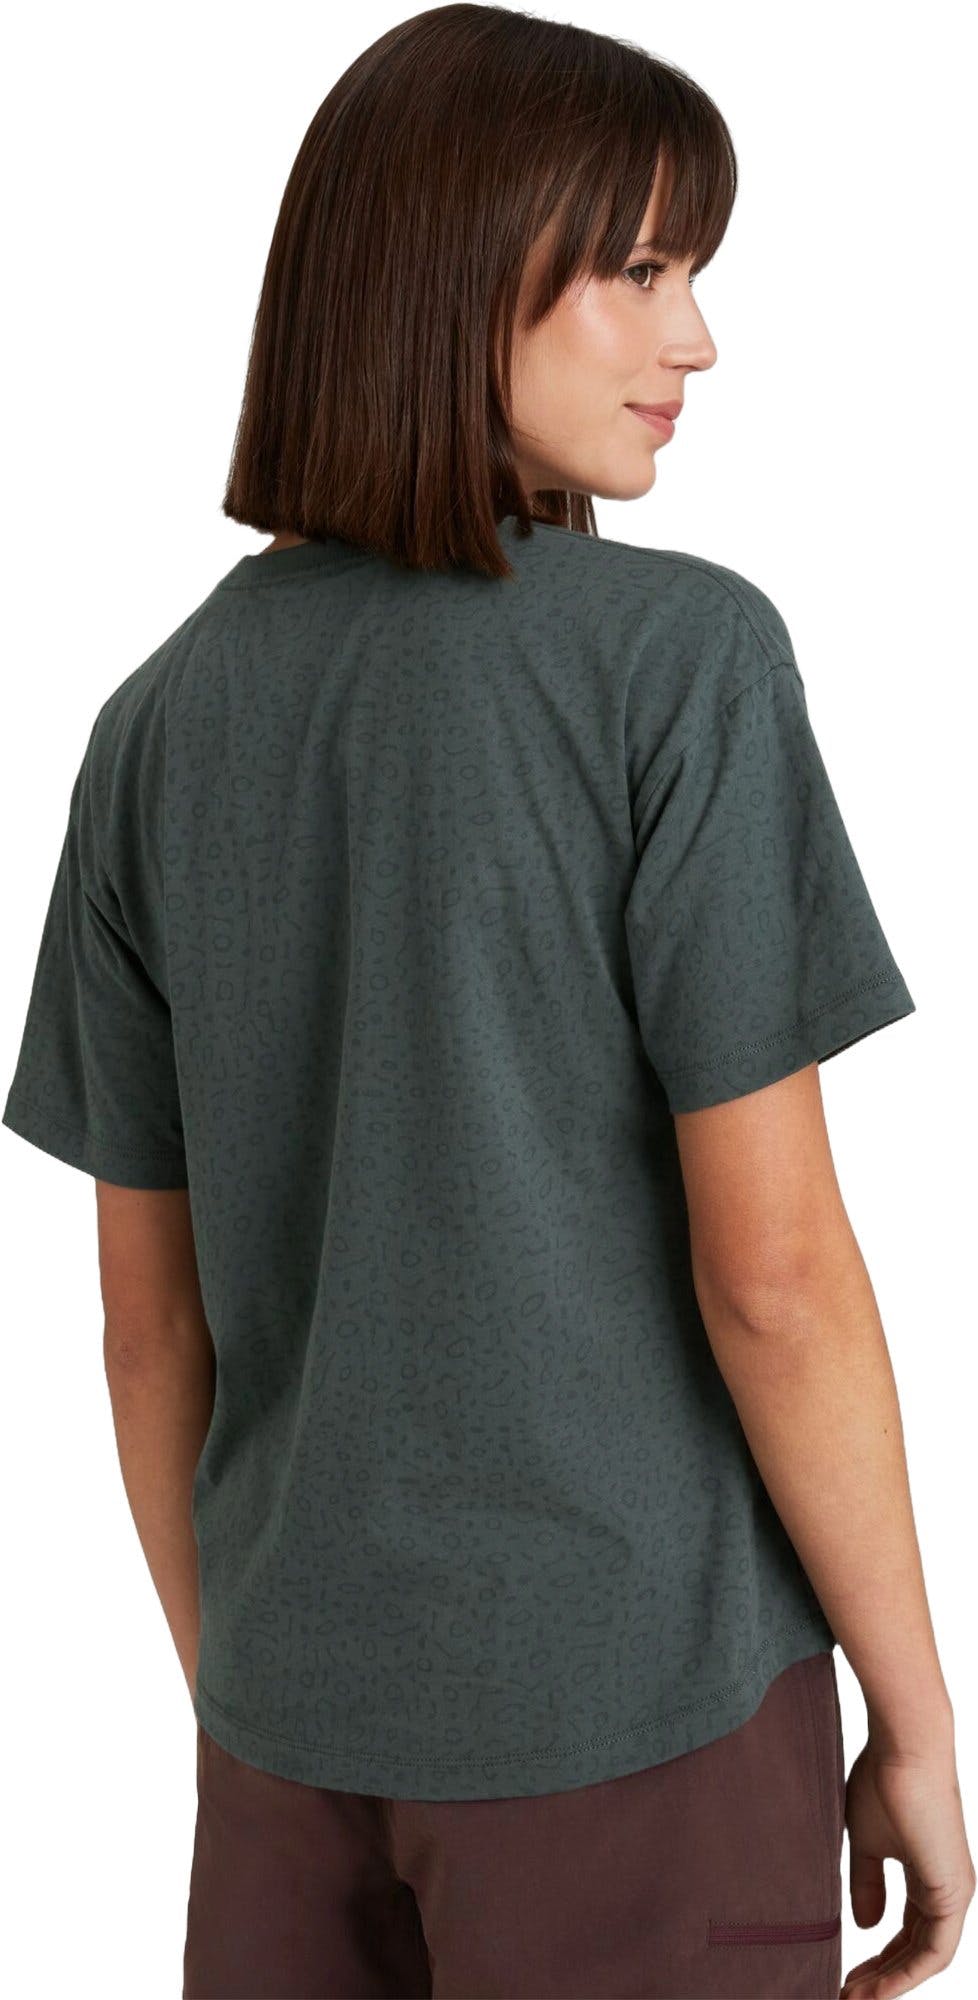 Numéro de l'image de la galerie de produits 4 pour le produit T-shirt à manches courtes Manta - Femme